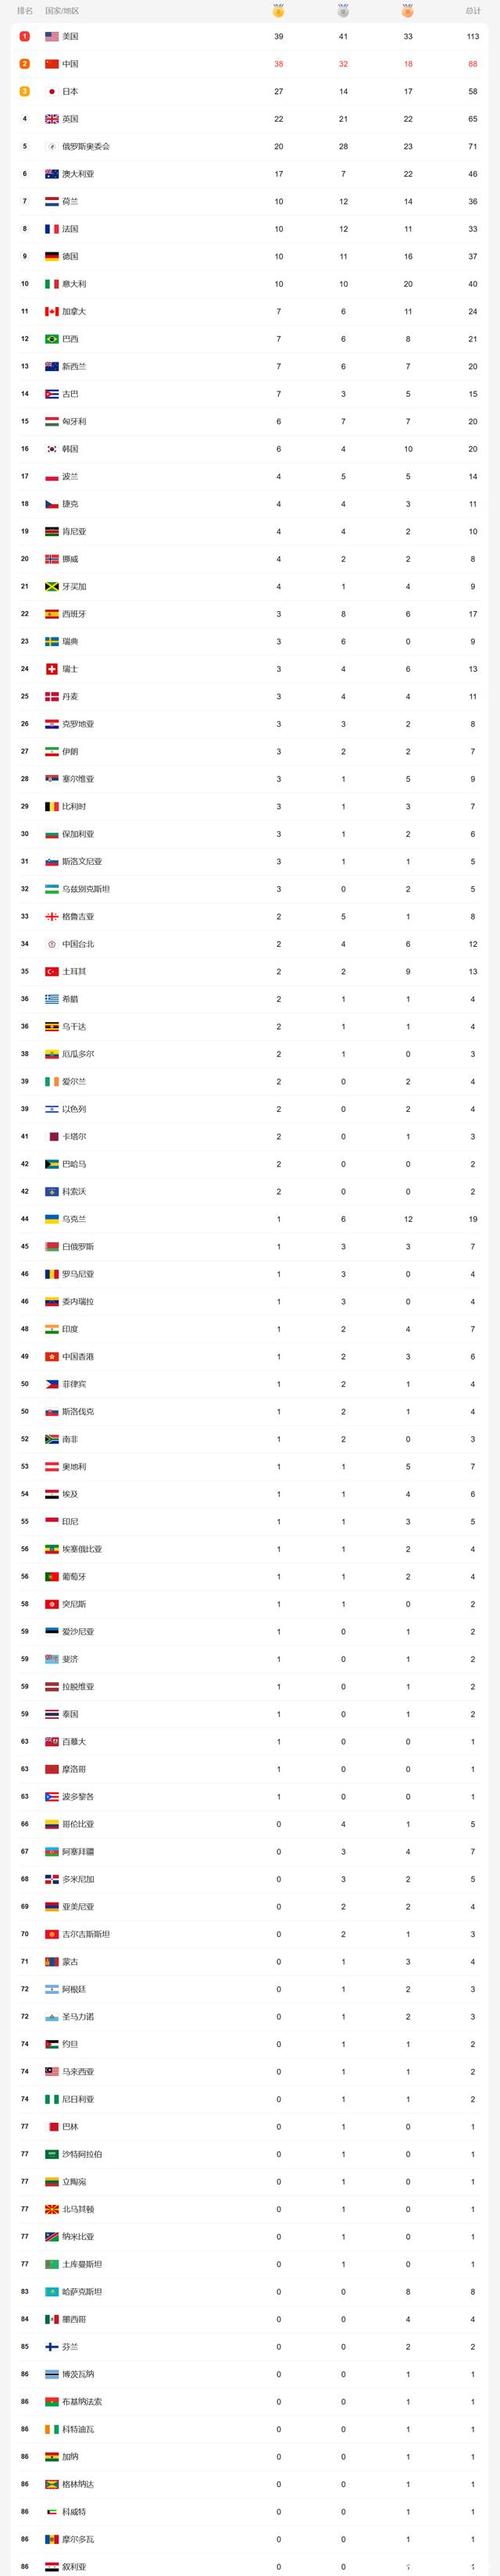 2021年奥运会金牌榜排名